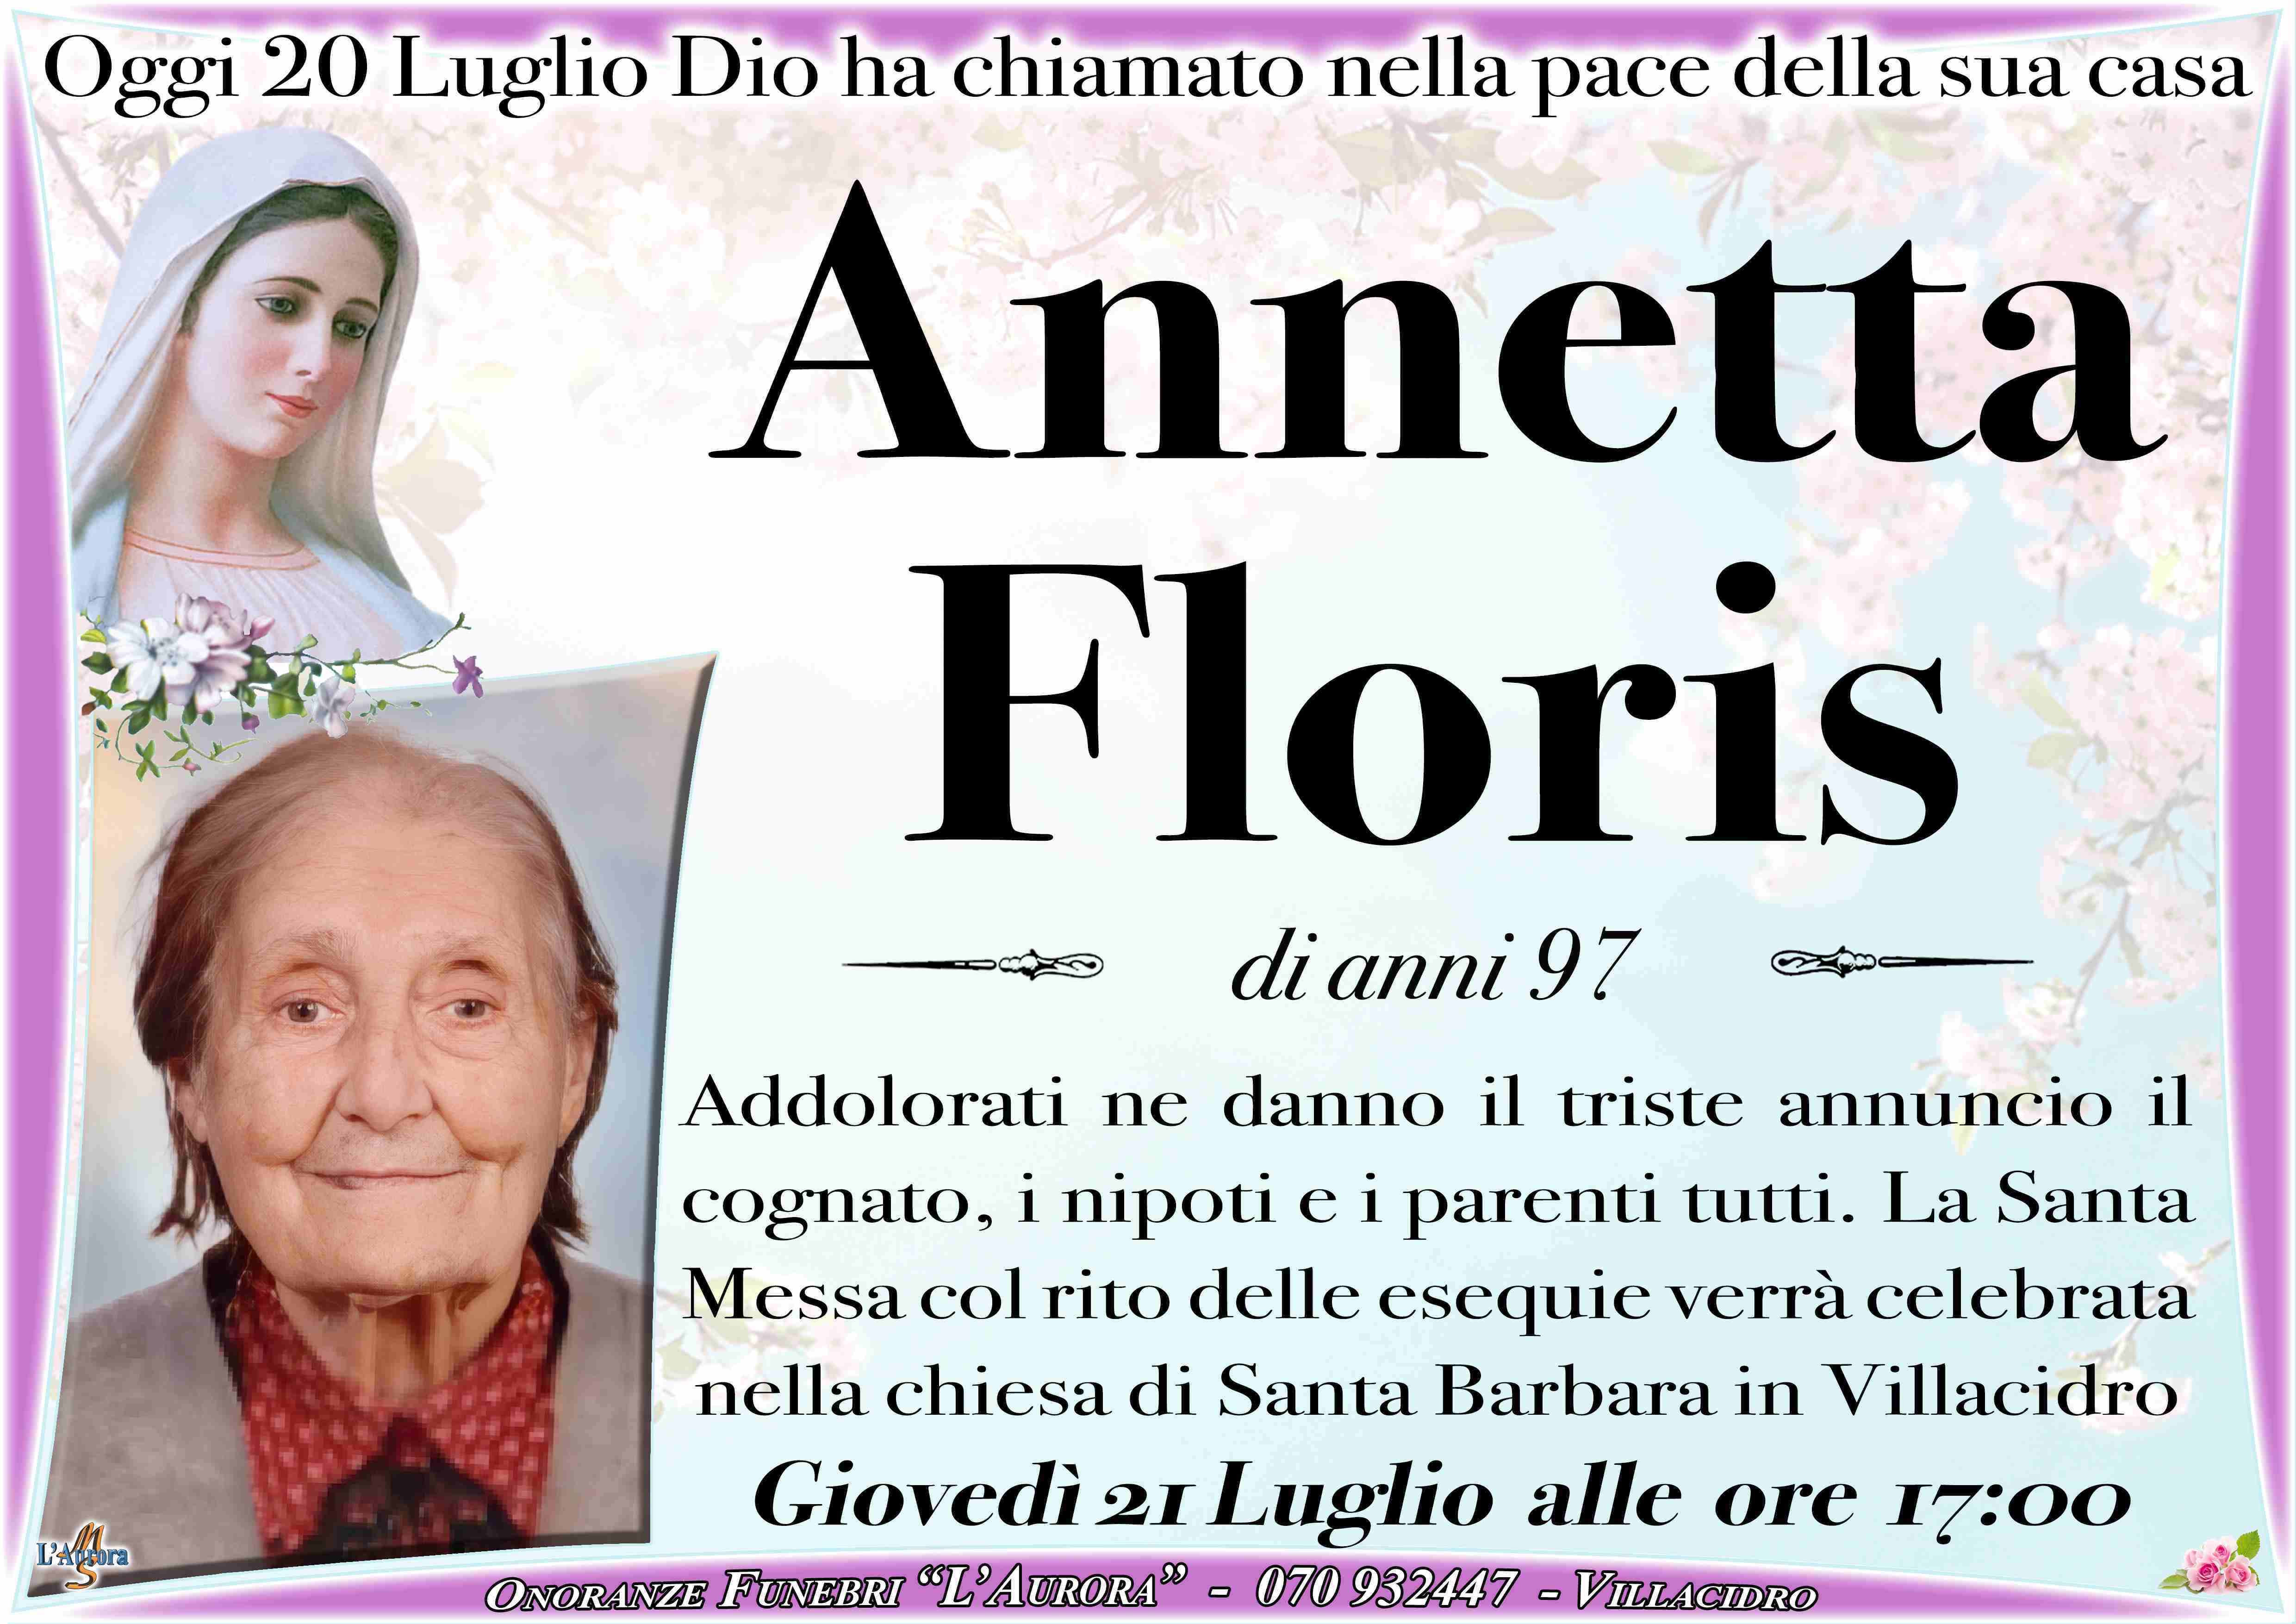 Annetta Floris